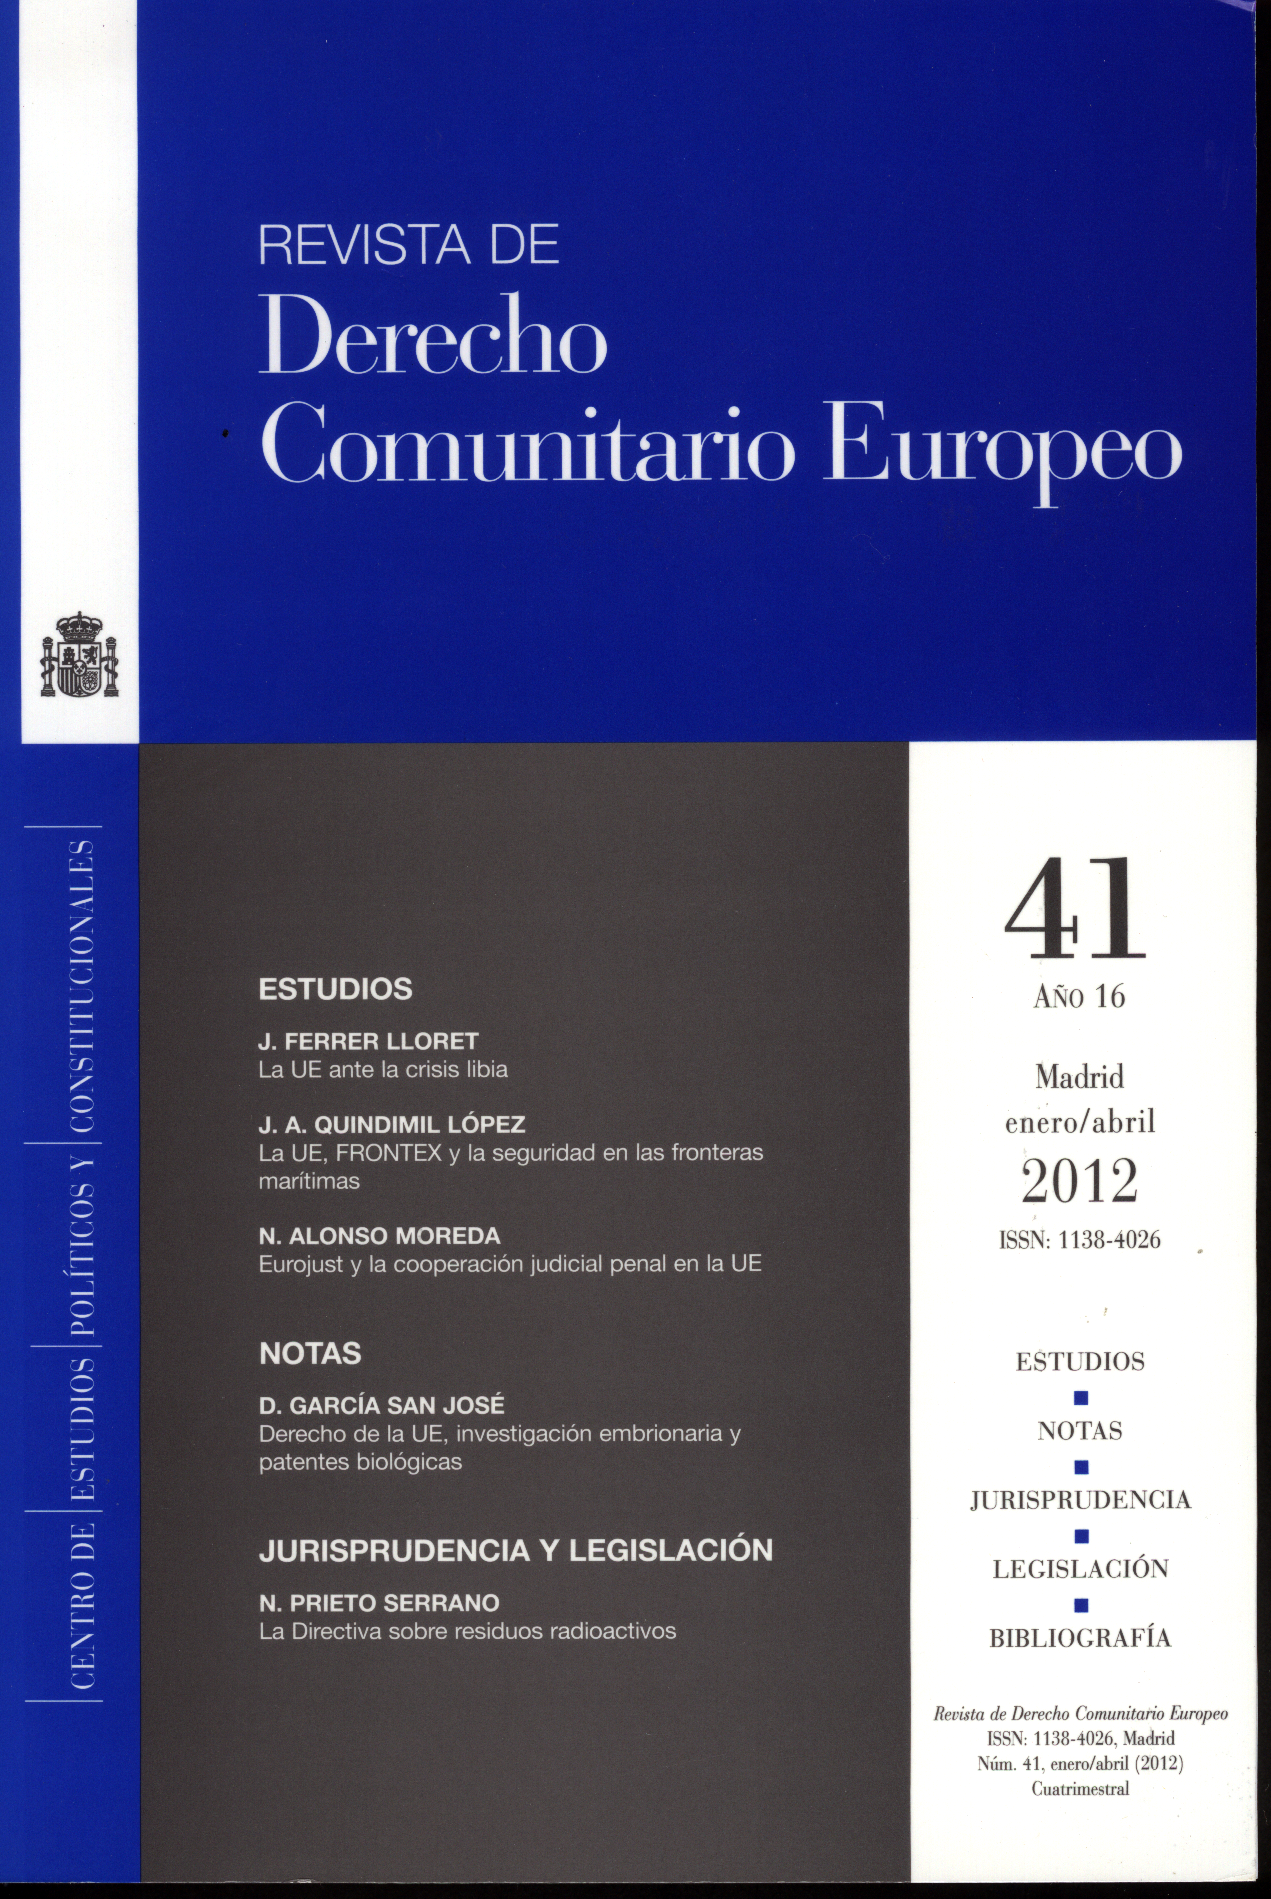 Revista de Derecho Comunitario Europeo